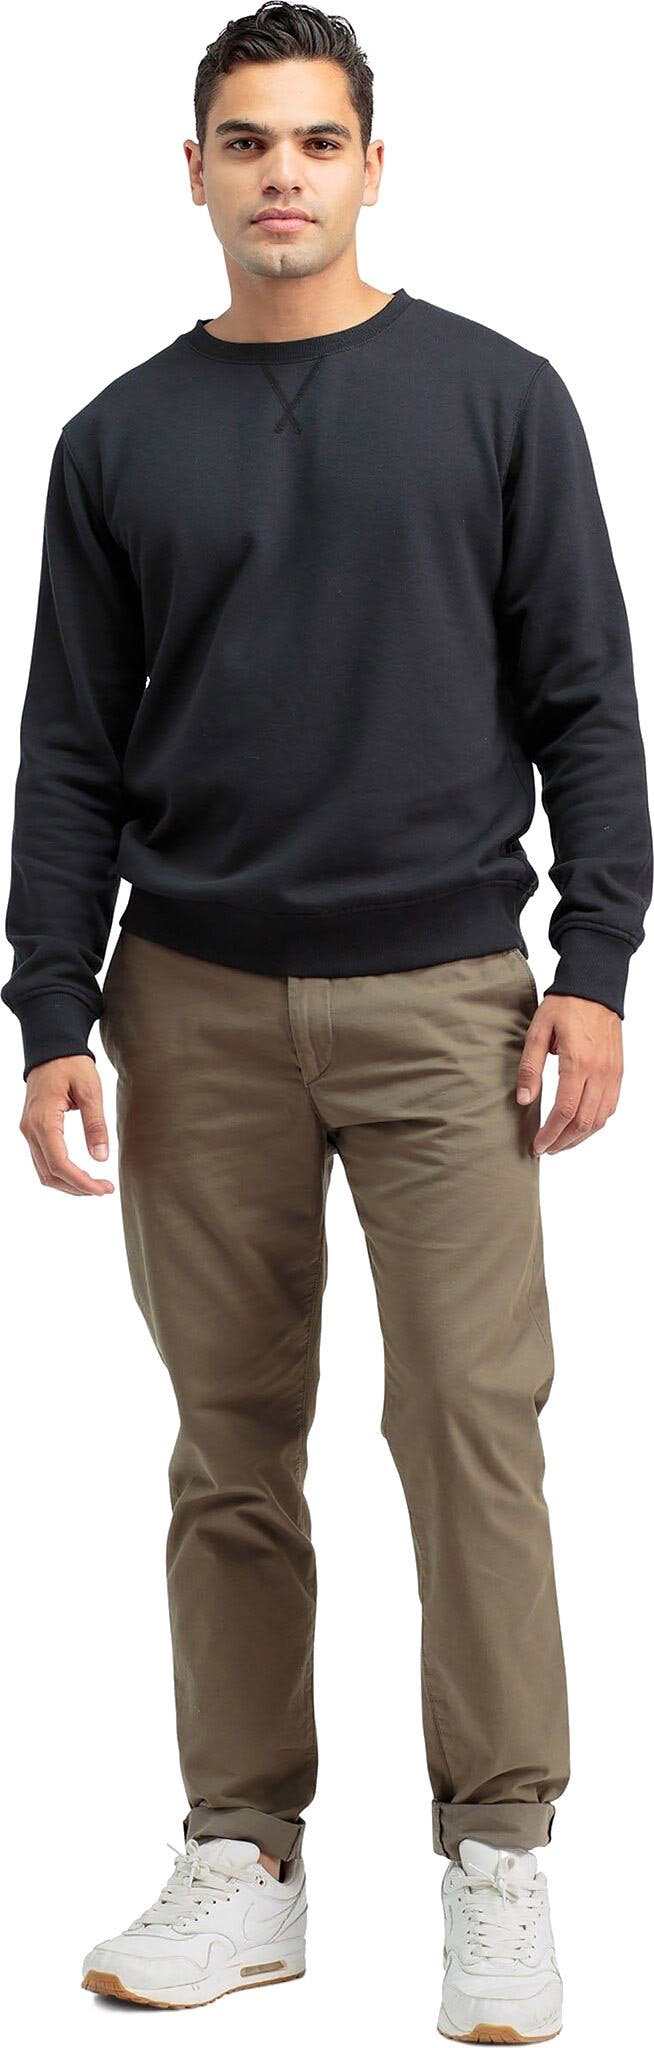 Product gallery image number 5 for product Fleece Sweatshirt - Men's